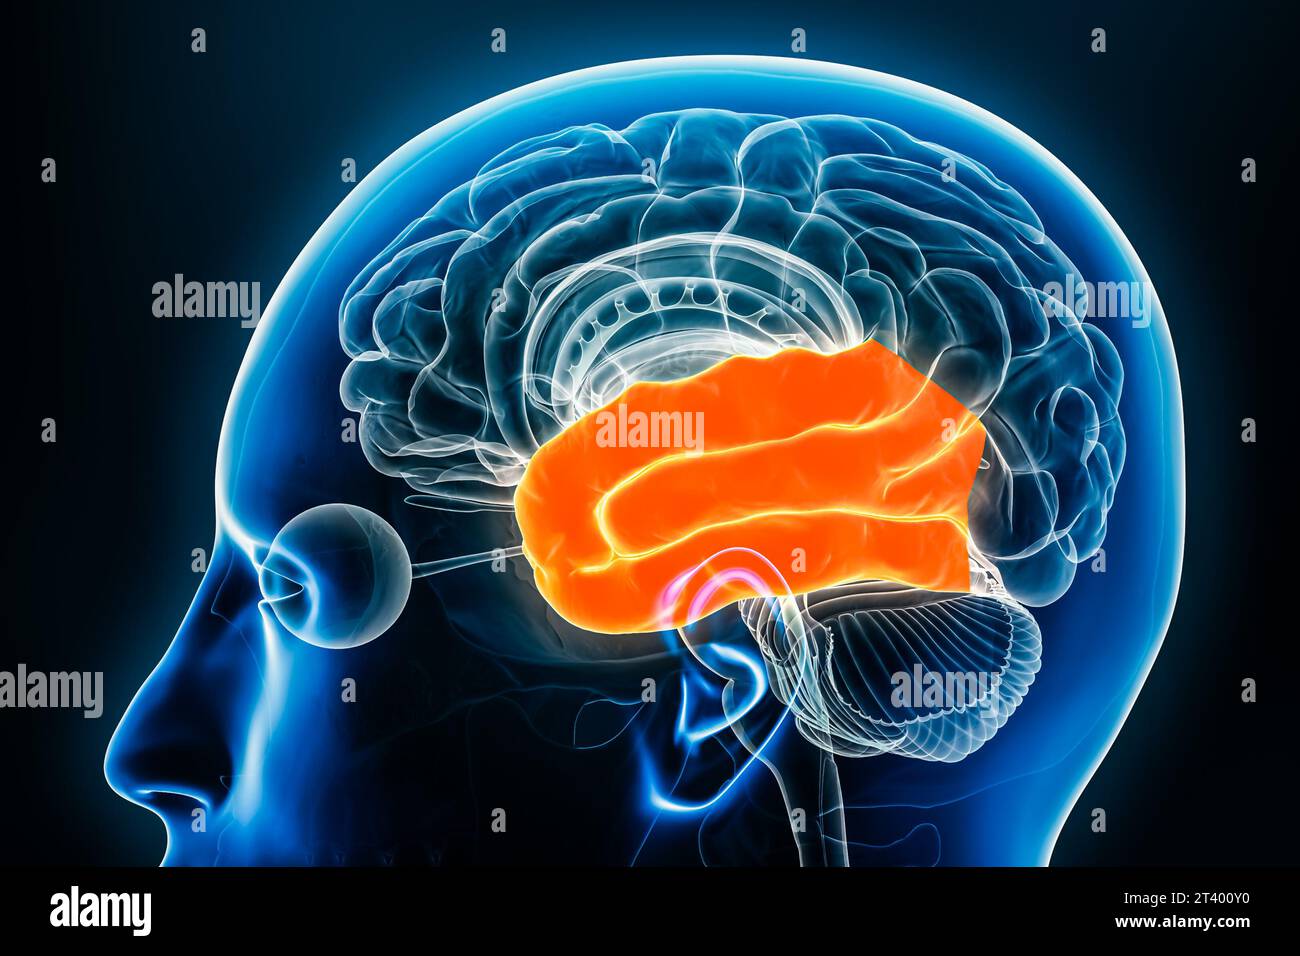 Lobo temporale della vista del profilo della corteccia cerebrale illustrazione di rendering 3D ravvicinato. Anatomia del cervello umano, neurologia, neuroscienza, medicina e salute Foto Stock